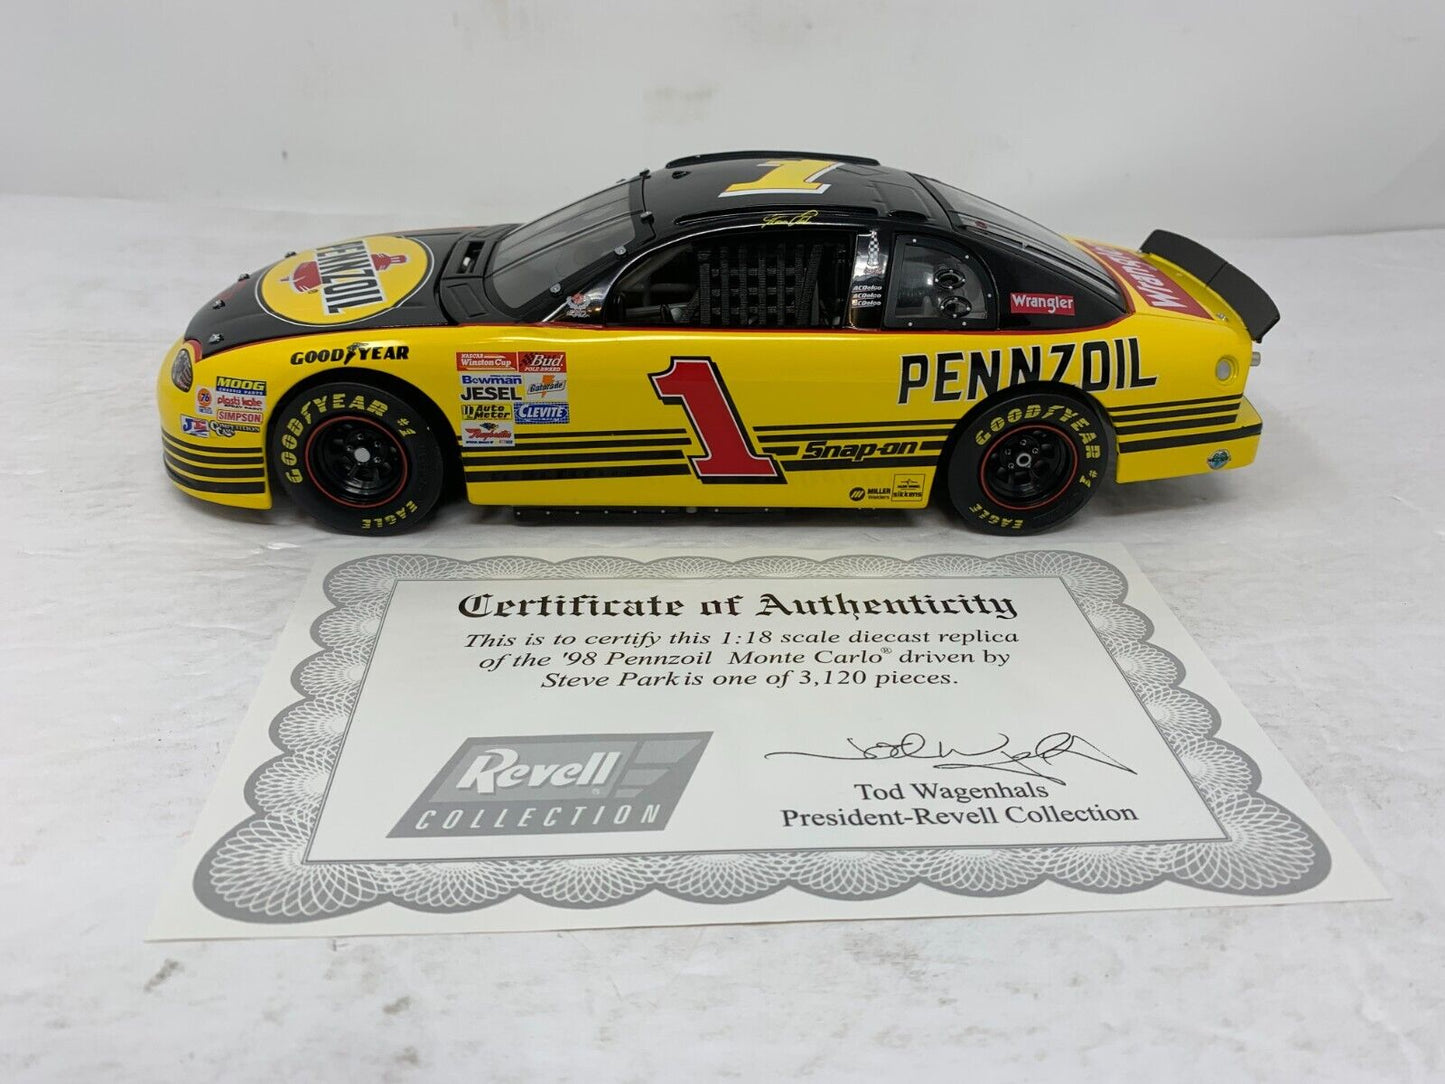 Revell Nascar #1 Pennzoil Steve Park 1998 Chevrolet Monte Carlo 1:18 Diecast